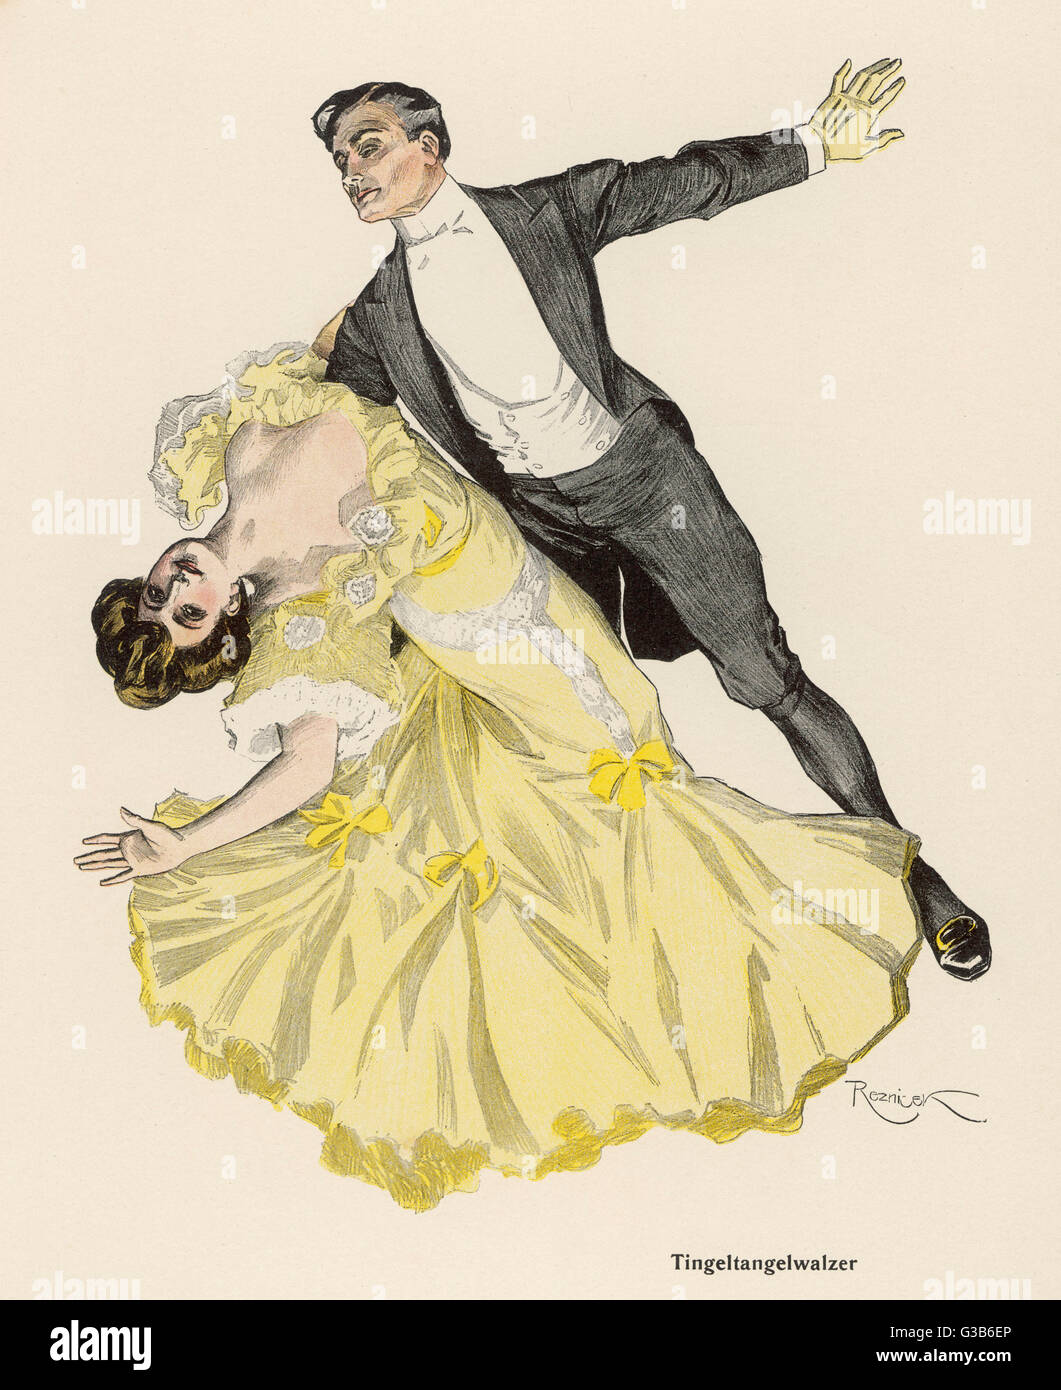 Die "TINGEL-TANGEL-WALZER" (= grob, Honky-Tonk Walzer) ist weit entfernt von den relativ behäbig Tanz des 19. Jahrhunderts Ballroom, obwohl schon damals ein Skandal.     Datum: 1908 Stockfoto